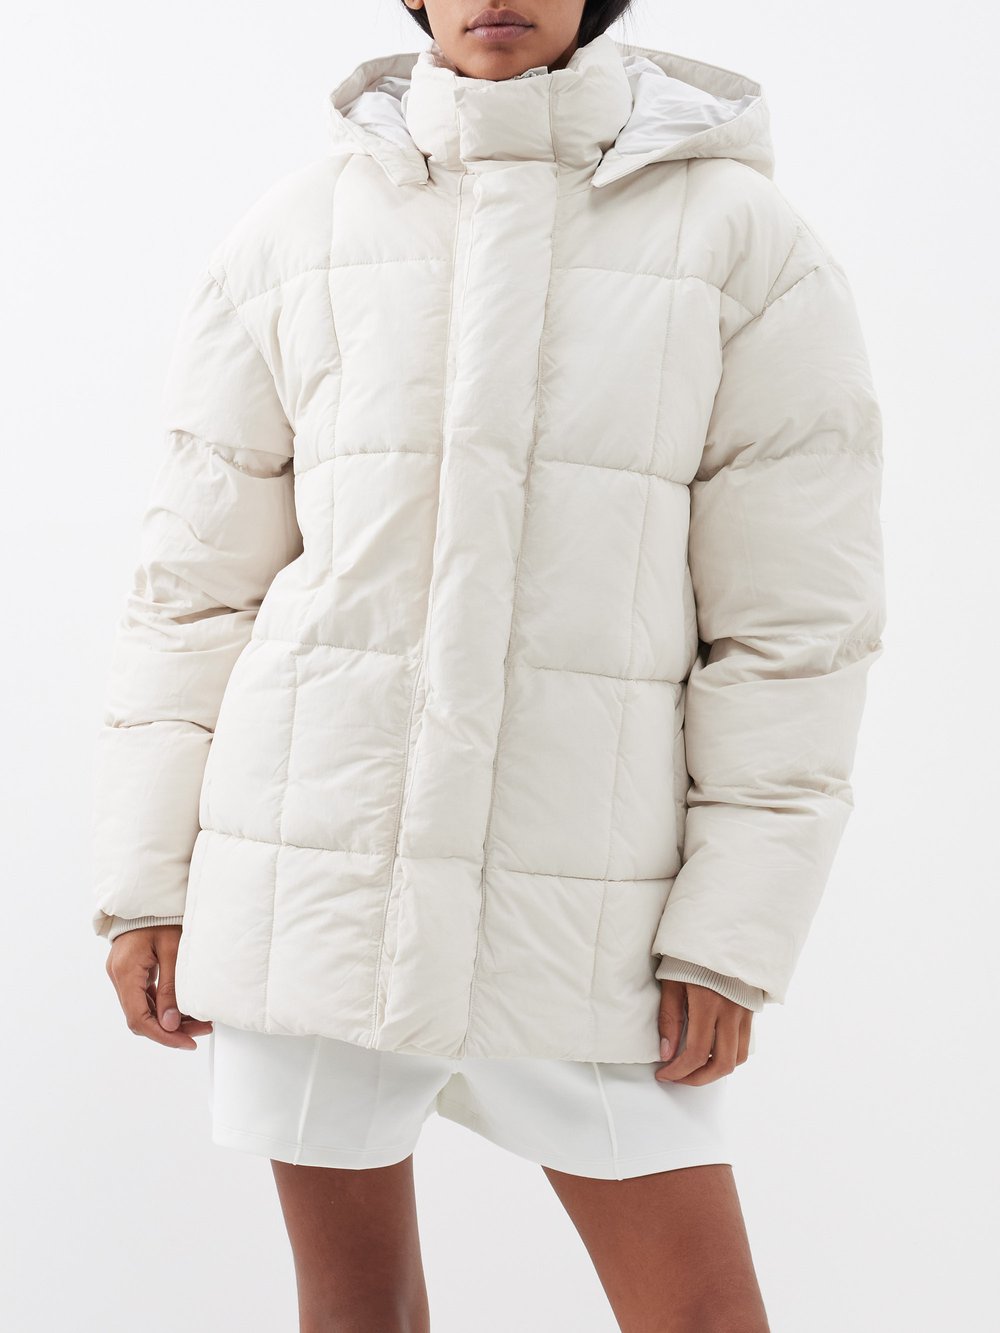 Утепленное пальто richmond из переработанного волокна. Alex Eagle Sporting Club, белый пальто стеганое со съемным капюшоном модель бельвитессе wellensteyn красный